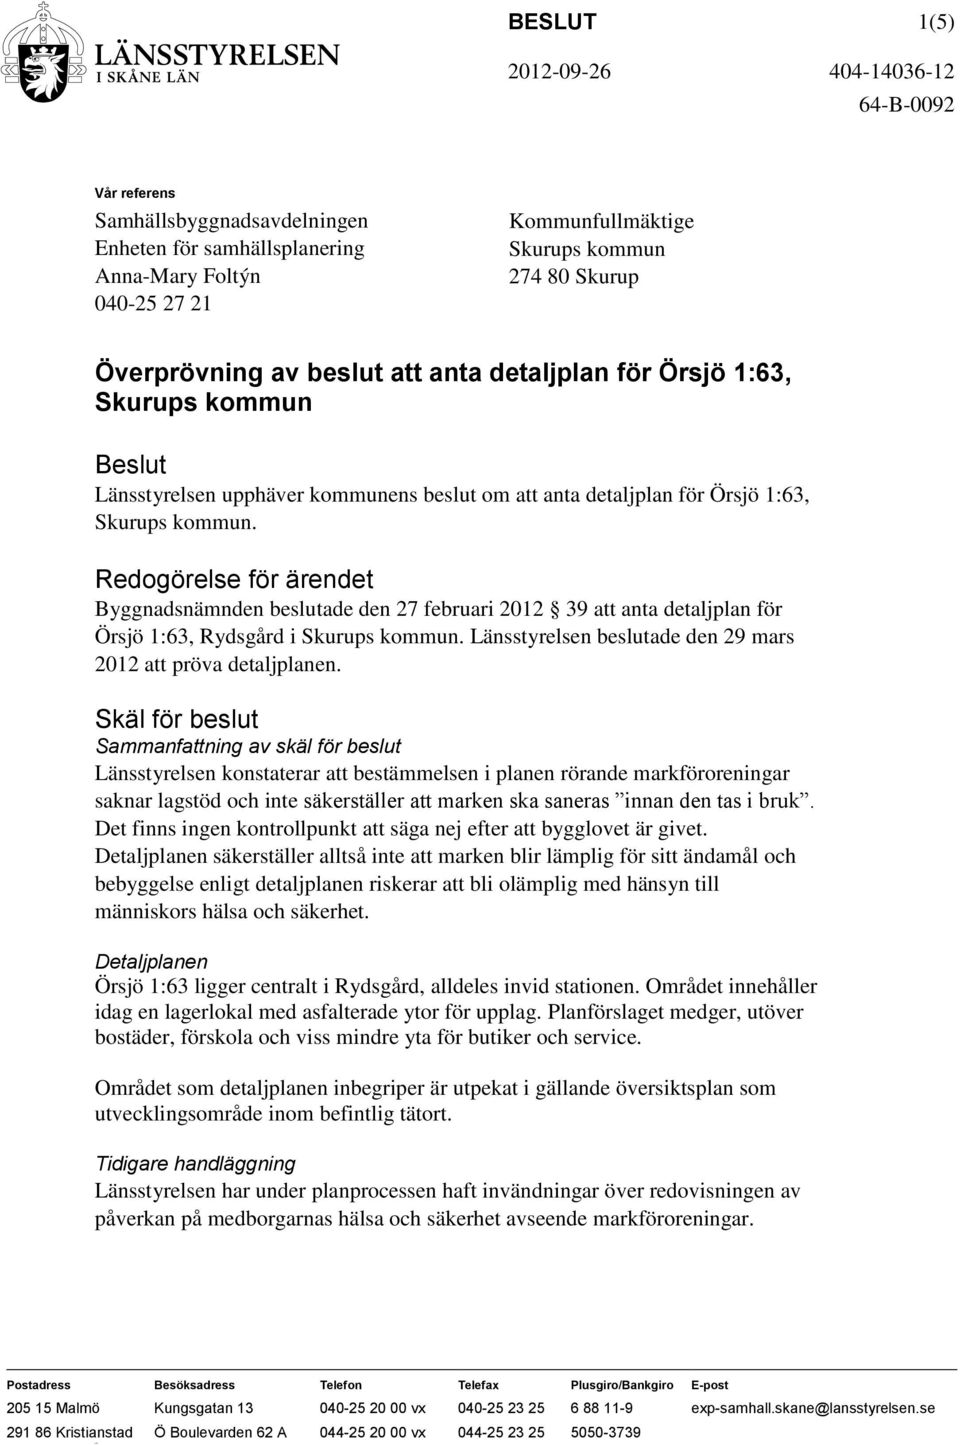 Redogörelse för ärendet Byggnadsnämnden beslutade den 27 februari 2012 39 att anta detaljplan för Örsjö 1:63, Rydsgård i Skurups kommun.